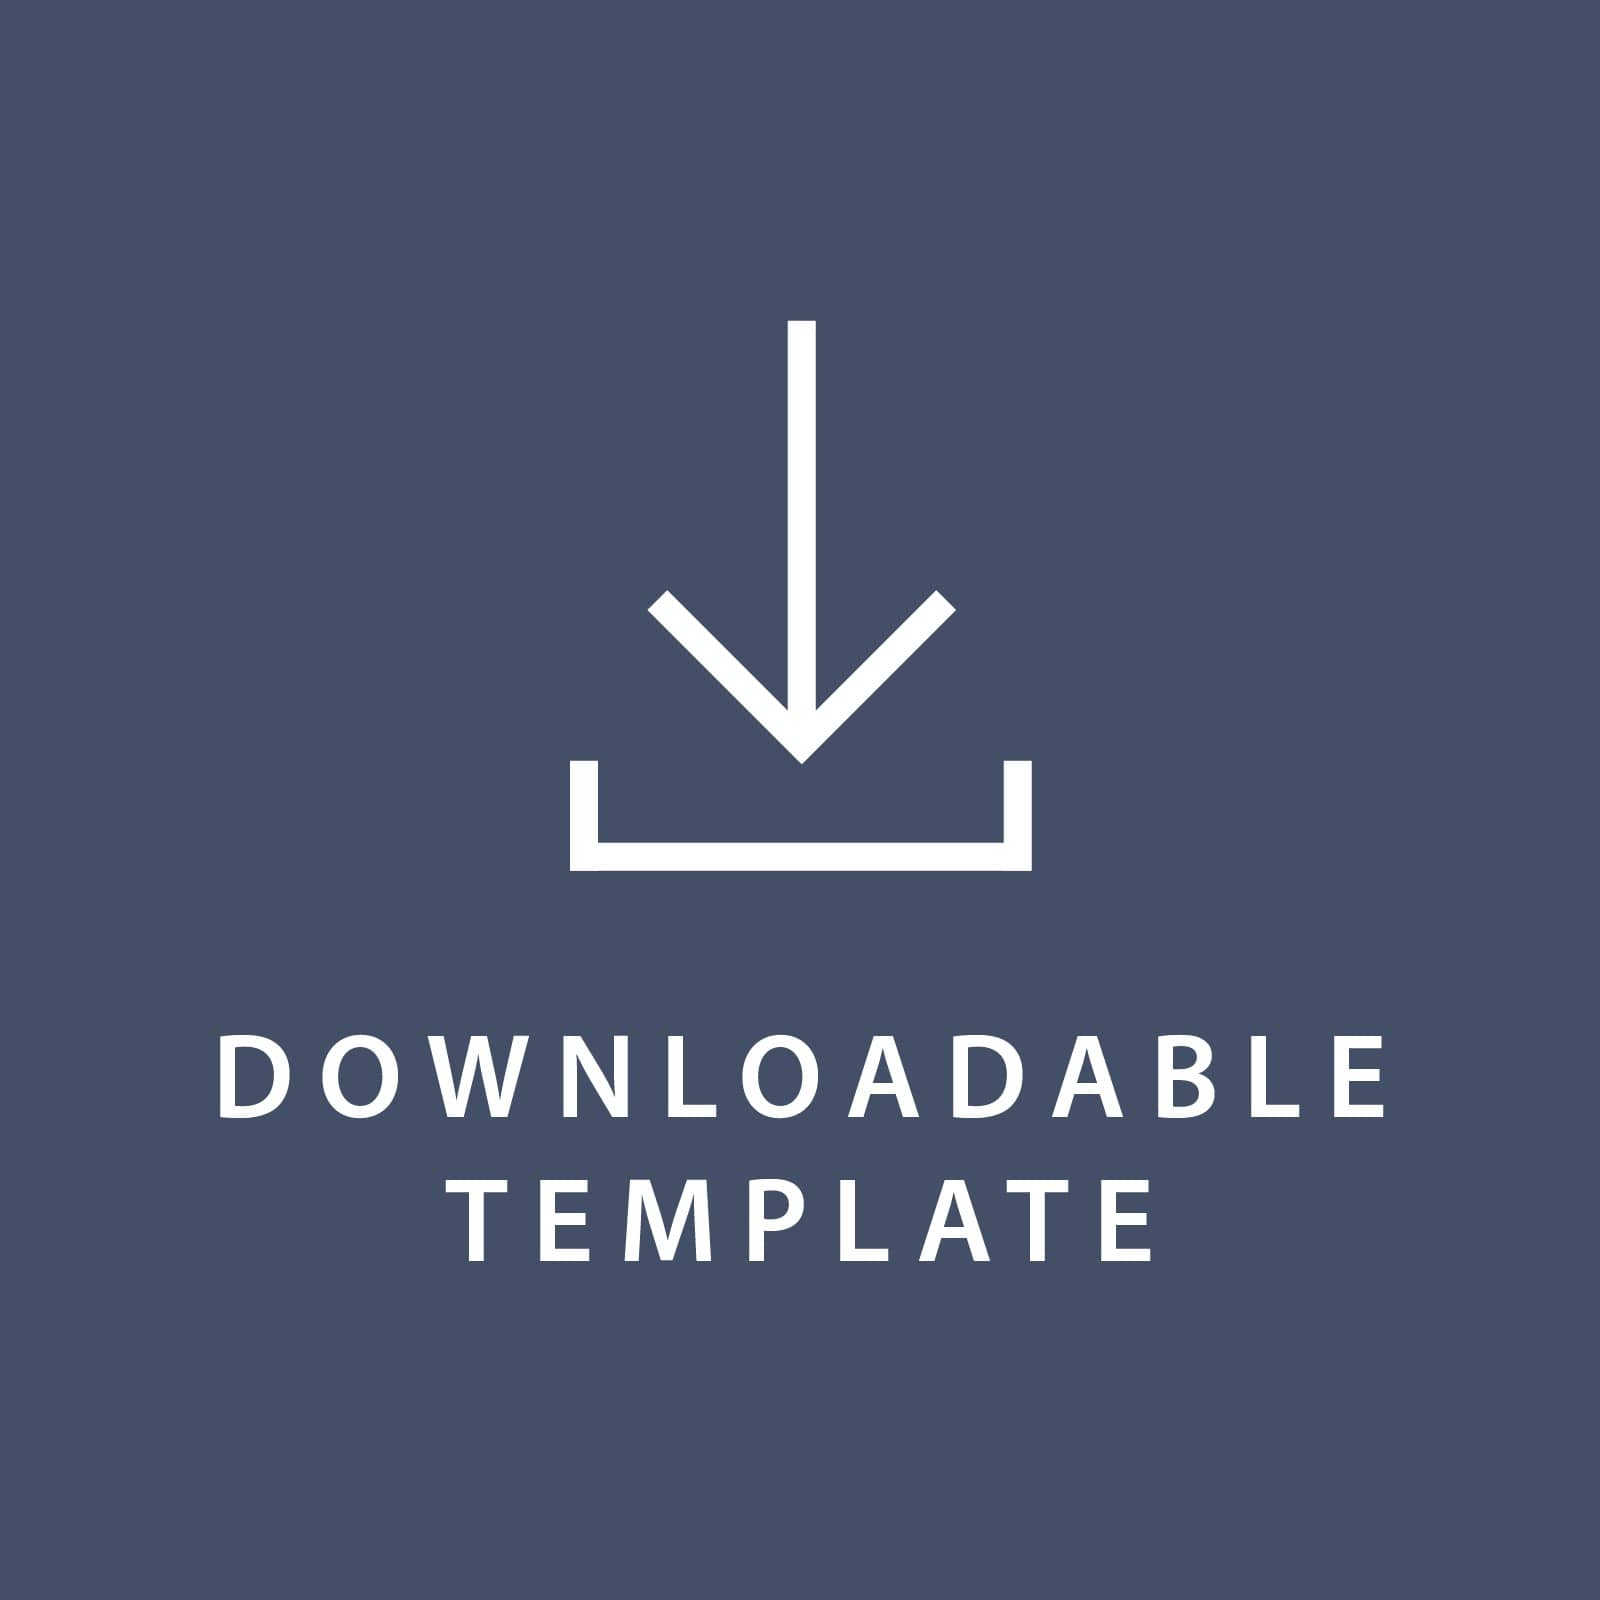 Template for 5.5 x 8.5 Invitations Gartner Studios Template tmplt0898